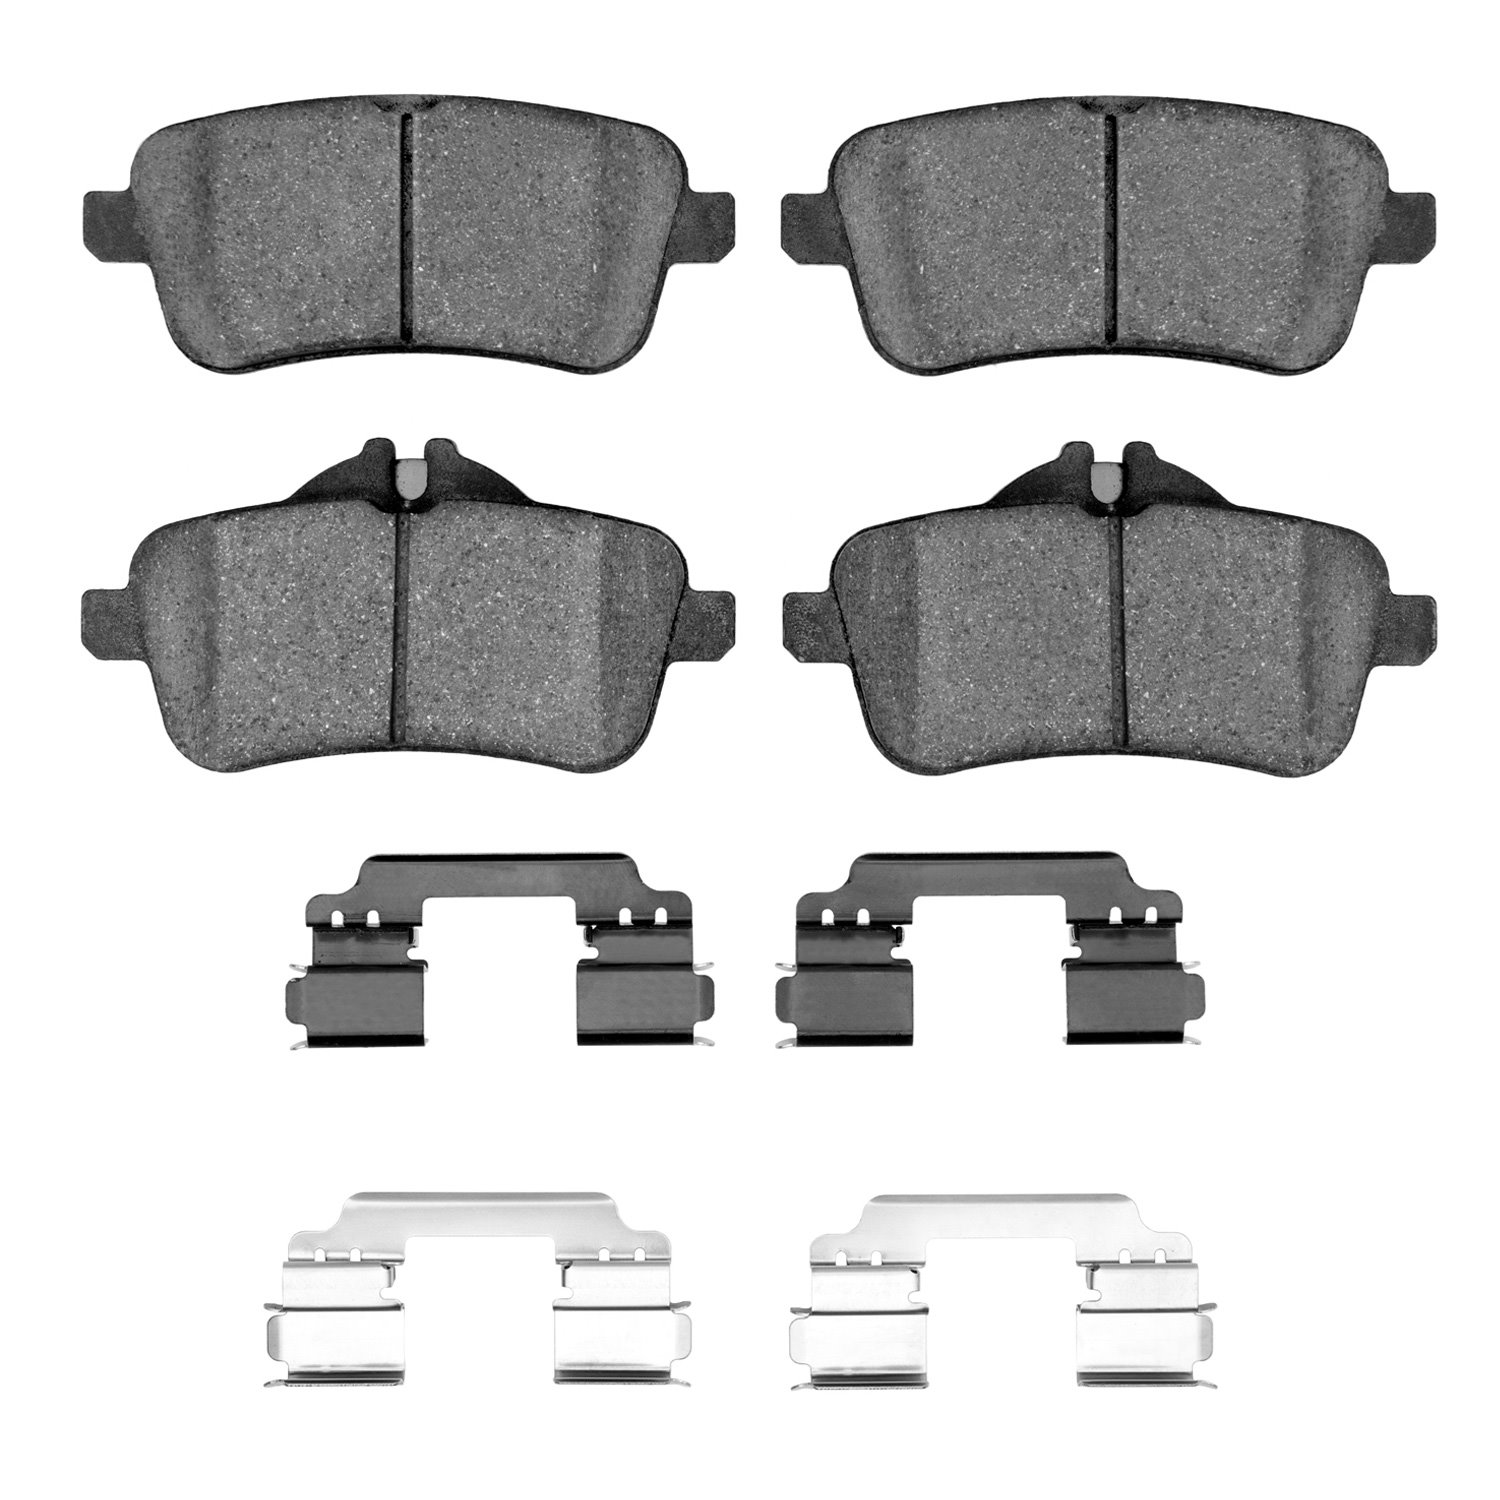 1600-1630-01 5000 Euro Ceramic Brake Pads & Hardware Kit, 2012-2020 Mercedes-Benz, Position: Rear